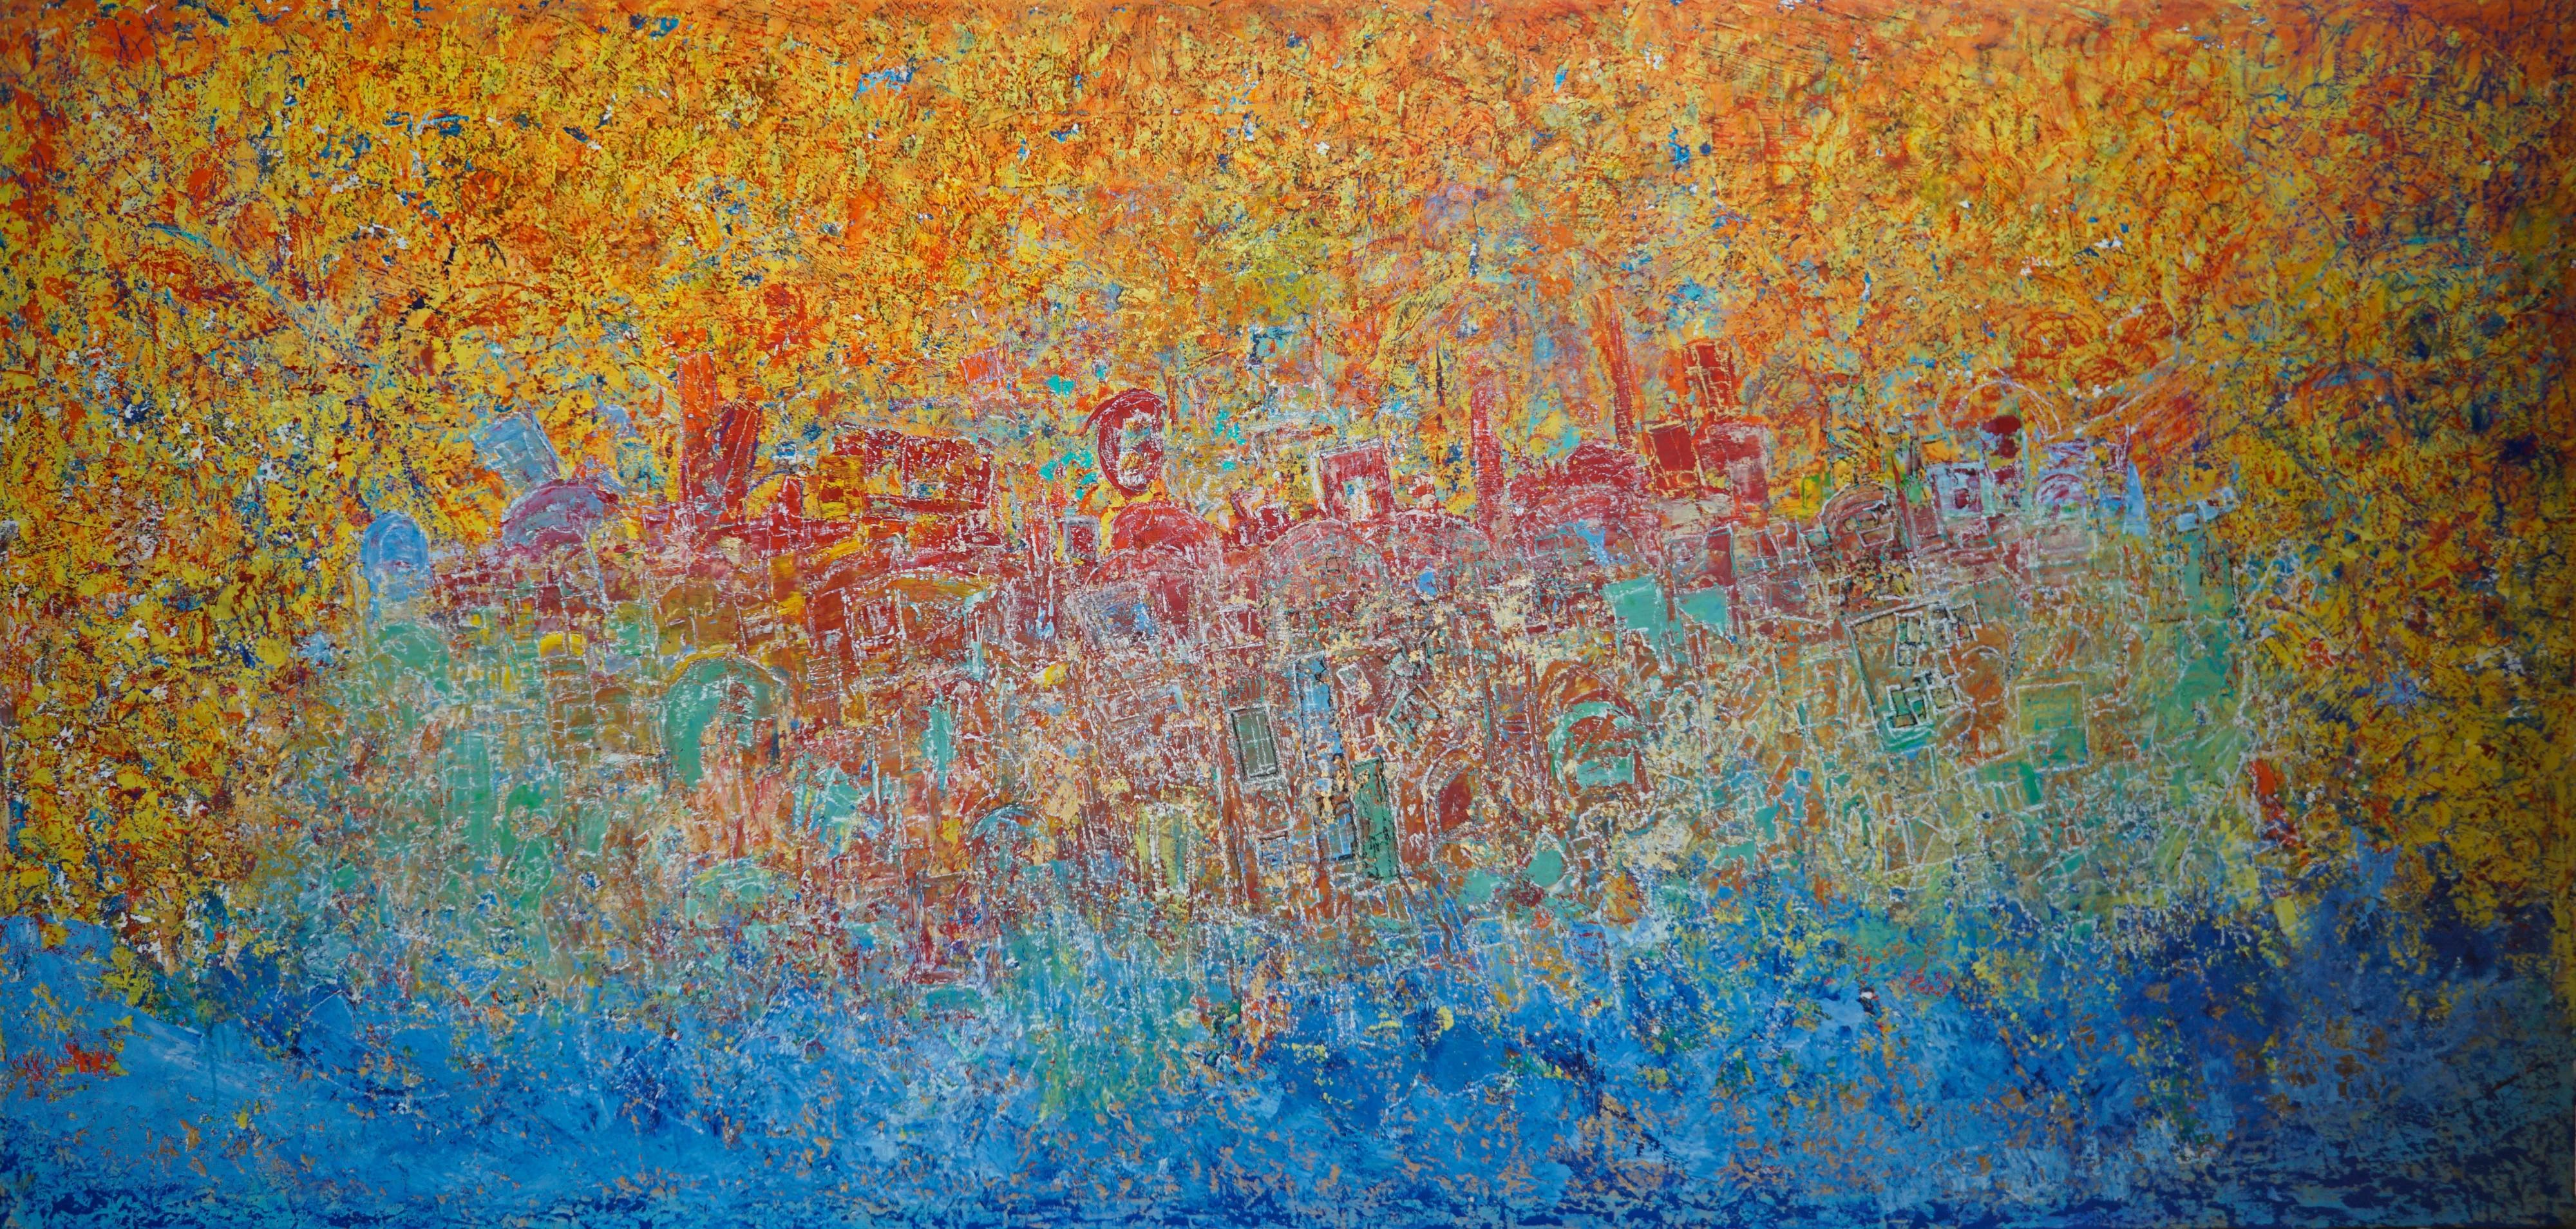 „Shining City on a Hill“ Abstraktes Gemälde 67" x 138" Zoll von Ahmed Farid

Mischtechnik auf Leinwand

Farid wurde 1950 in Kairo, Ägypten, geboren, wo er heute lebt und arbeitet. Er ist ein autodidaktischer ägyptischer Maler, der eine private